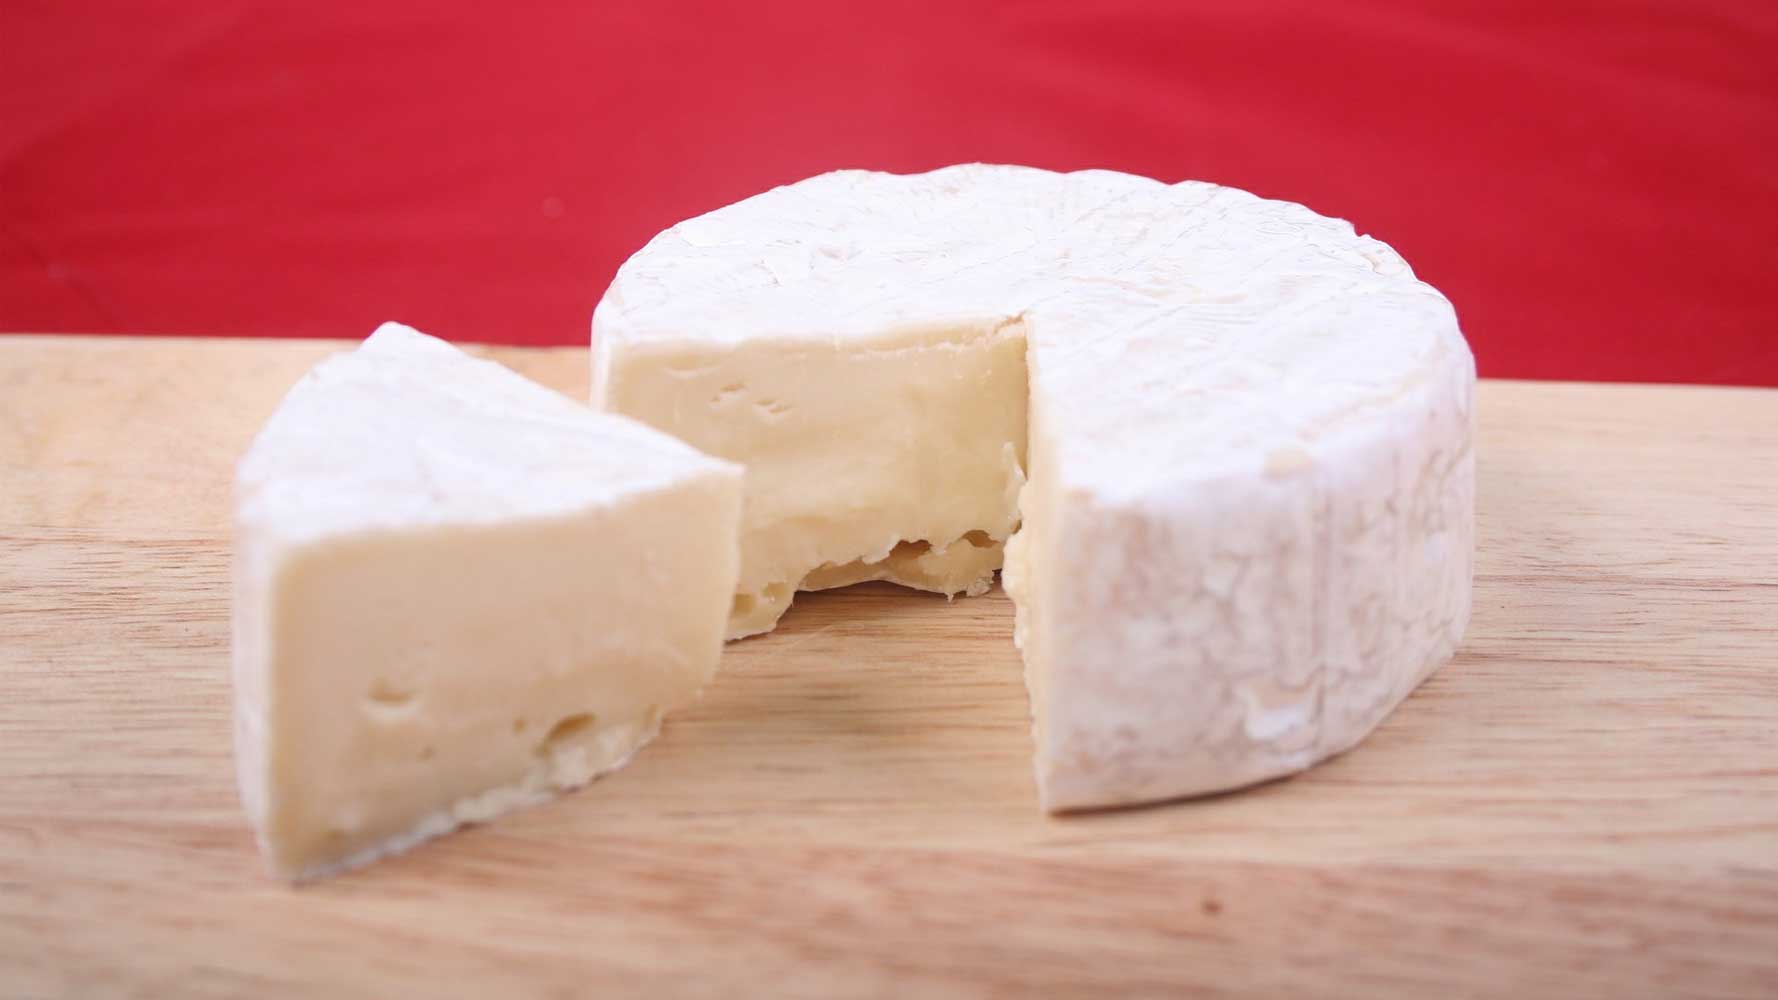 İnek peyniri sayfası, İnek peyniri resmi